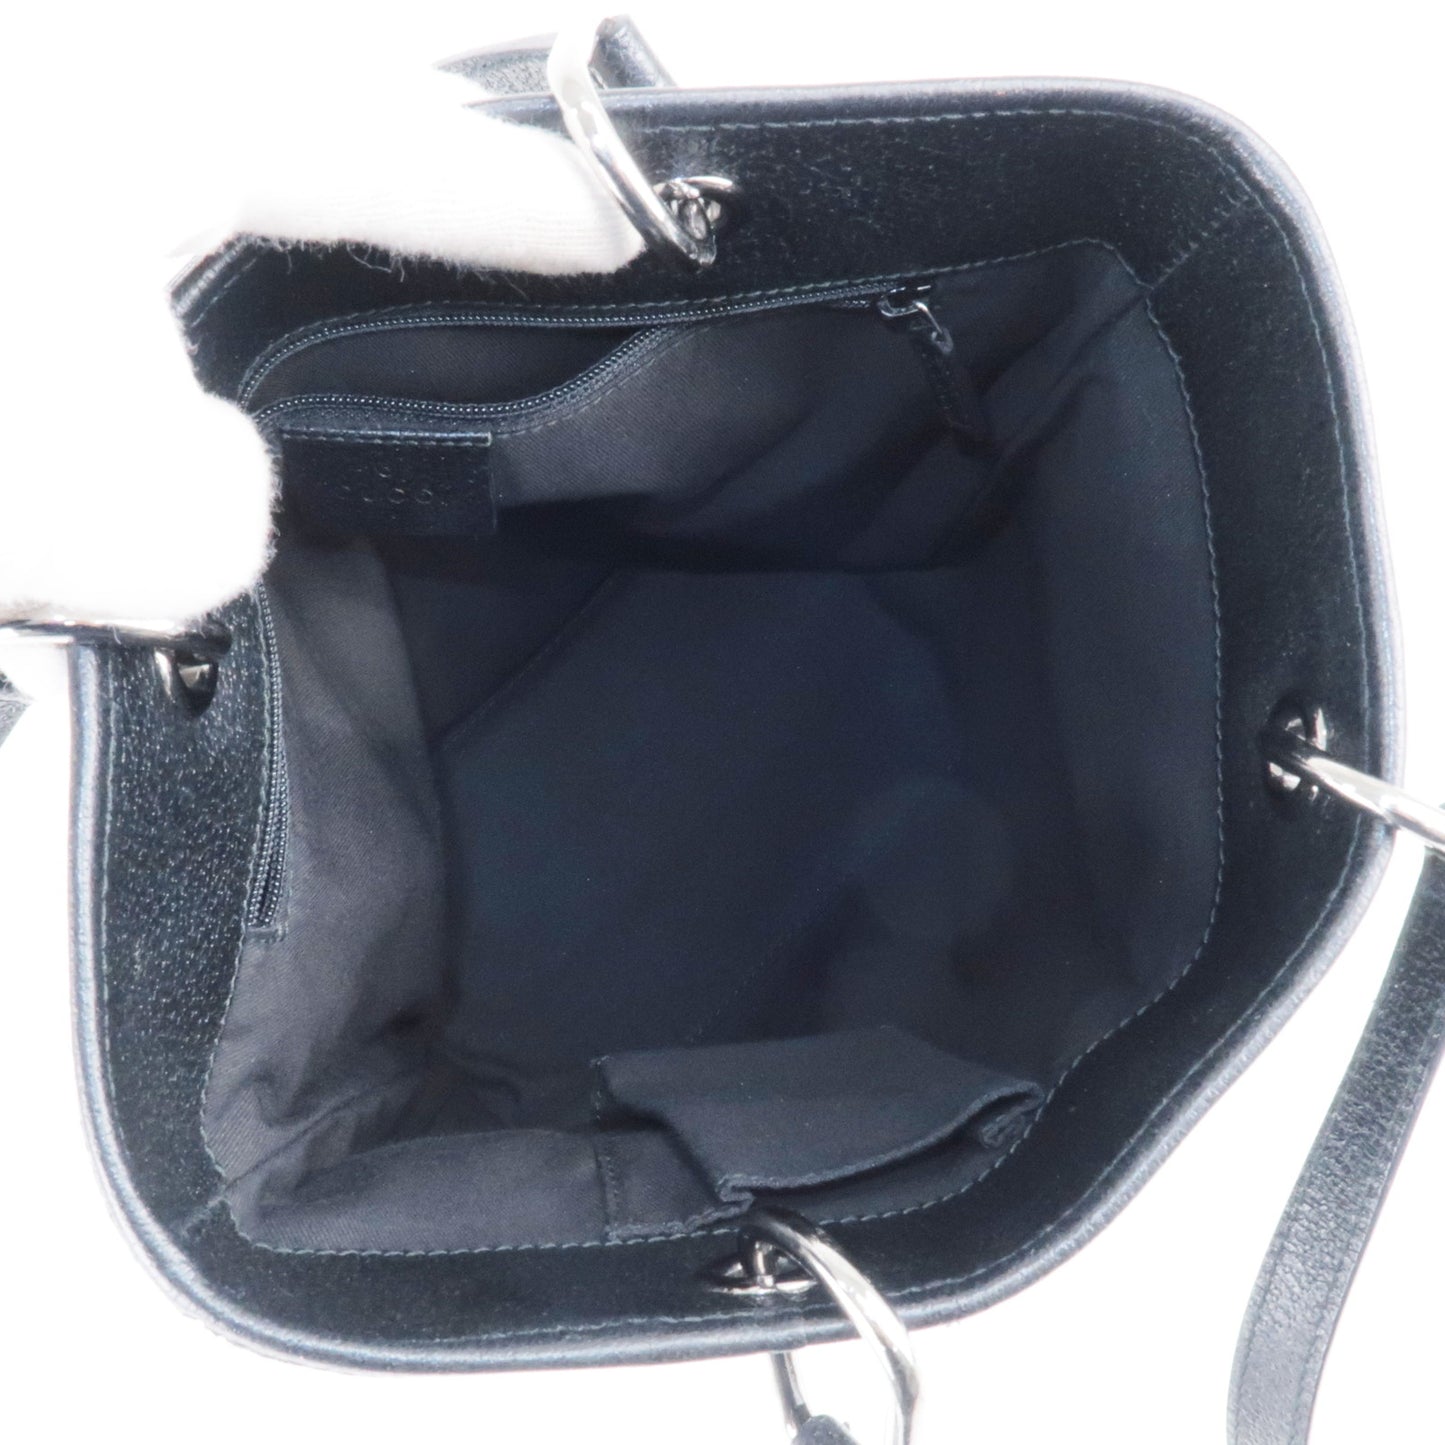 GUCCI GG Canvas Leather Tote Bag Black 120840